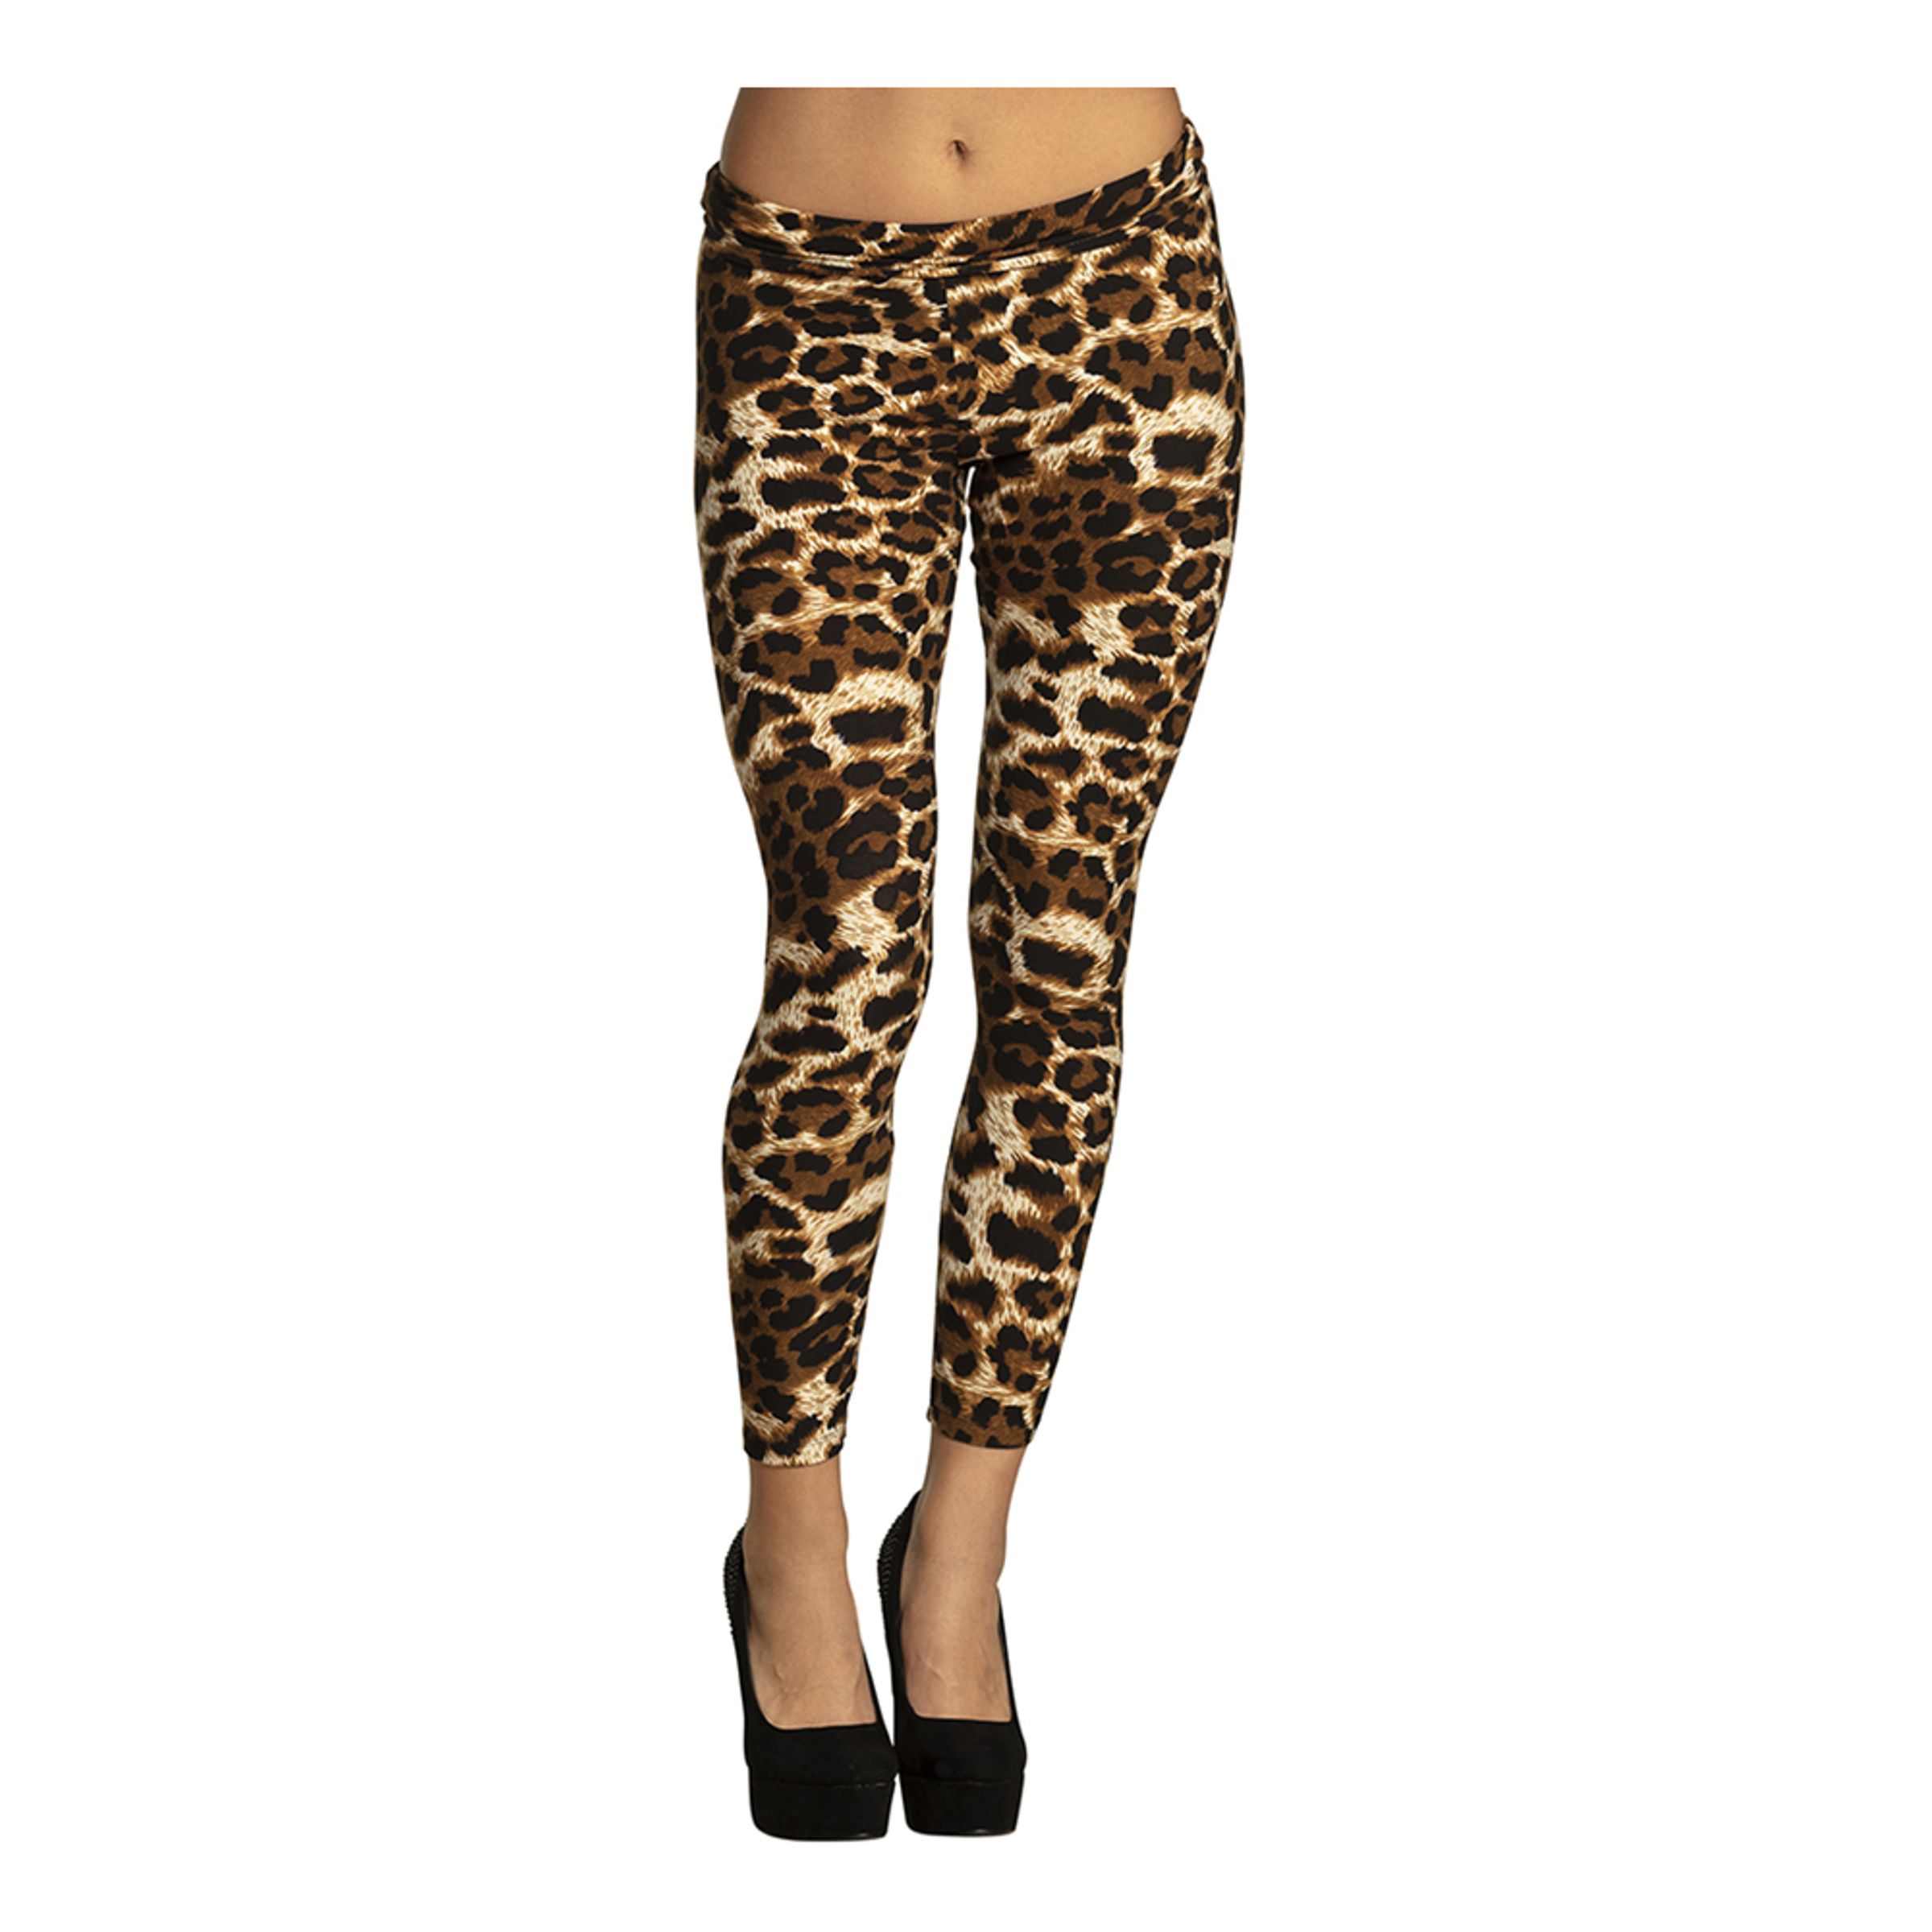 Leggings Leopard - One size